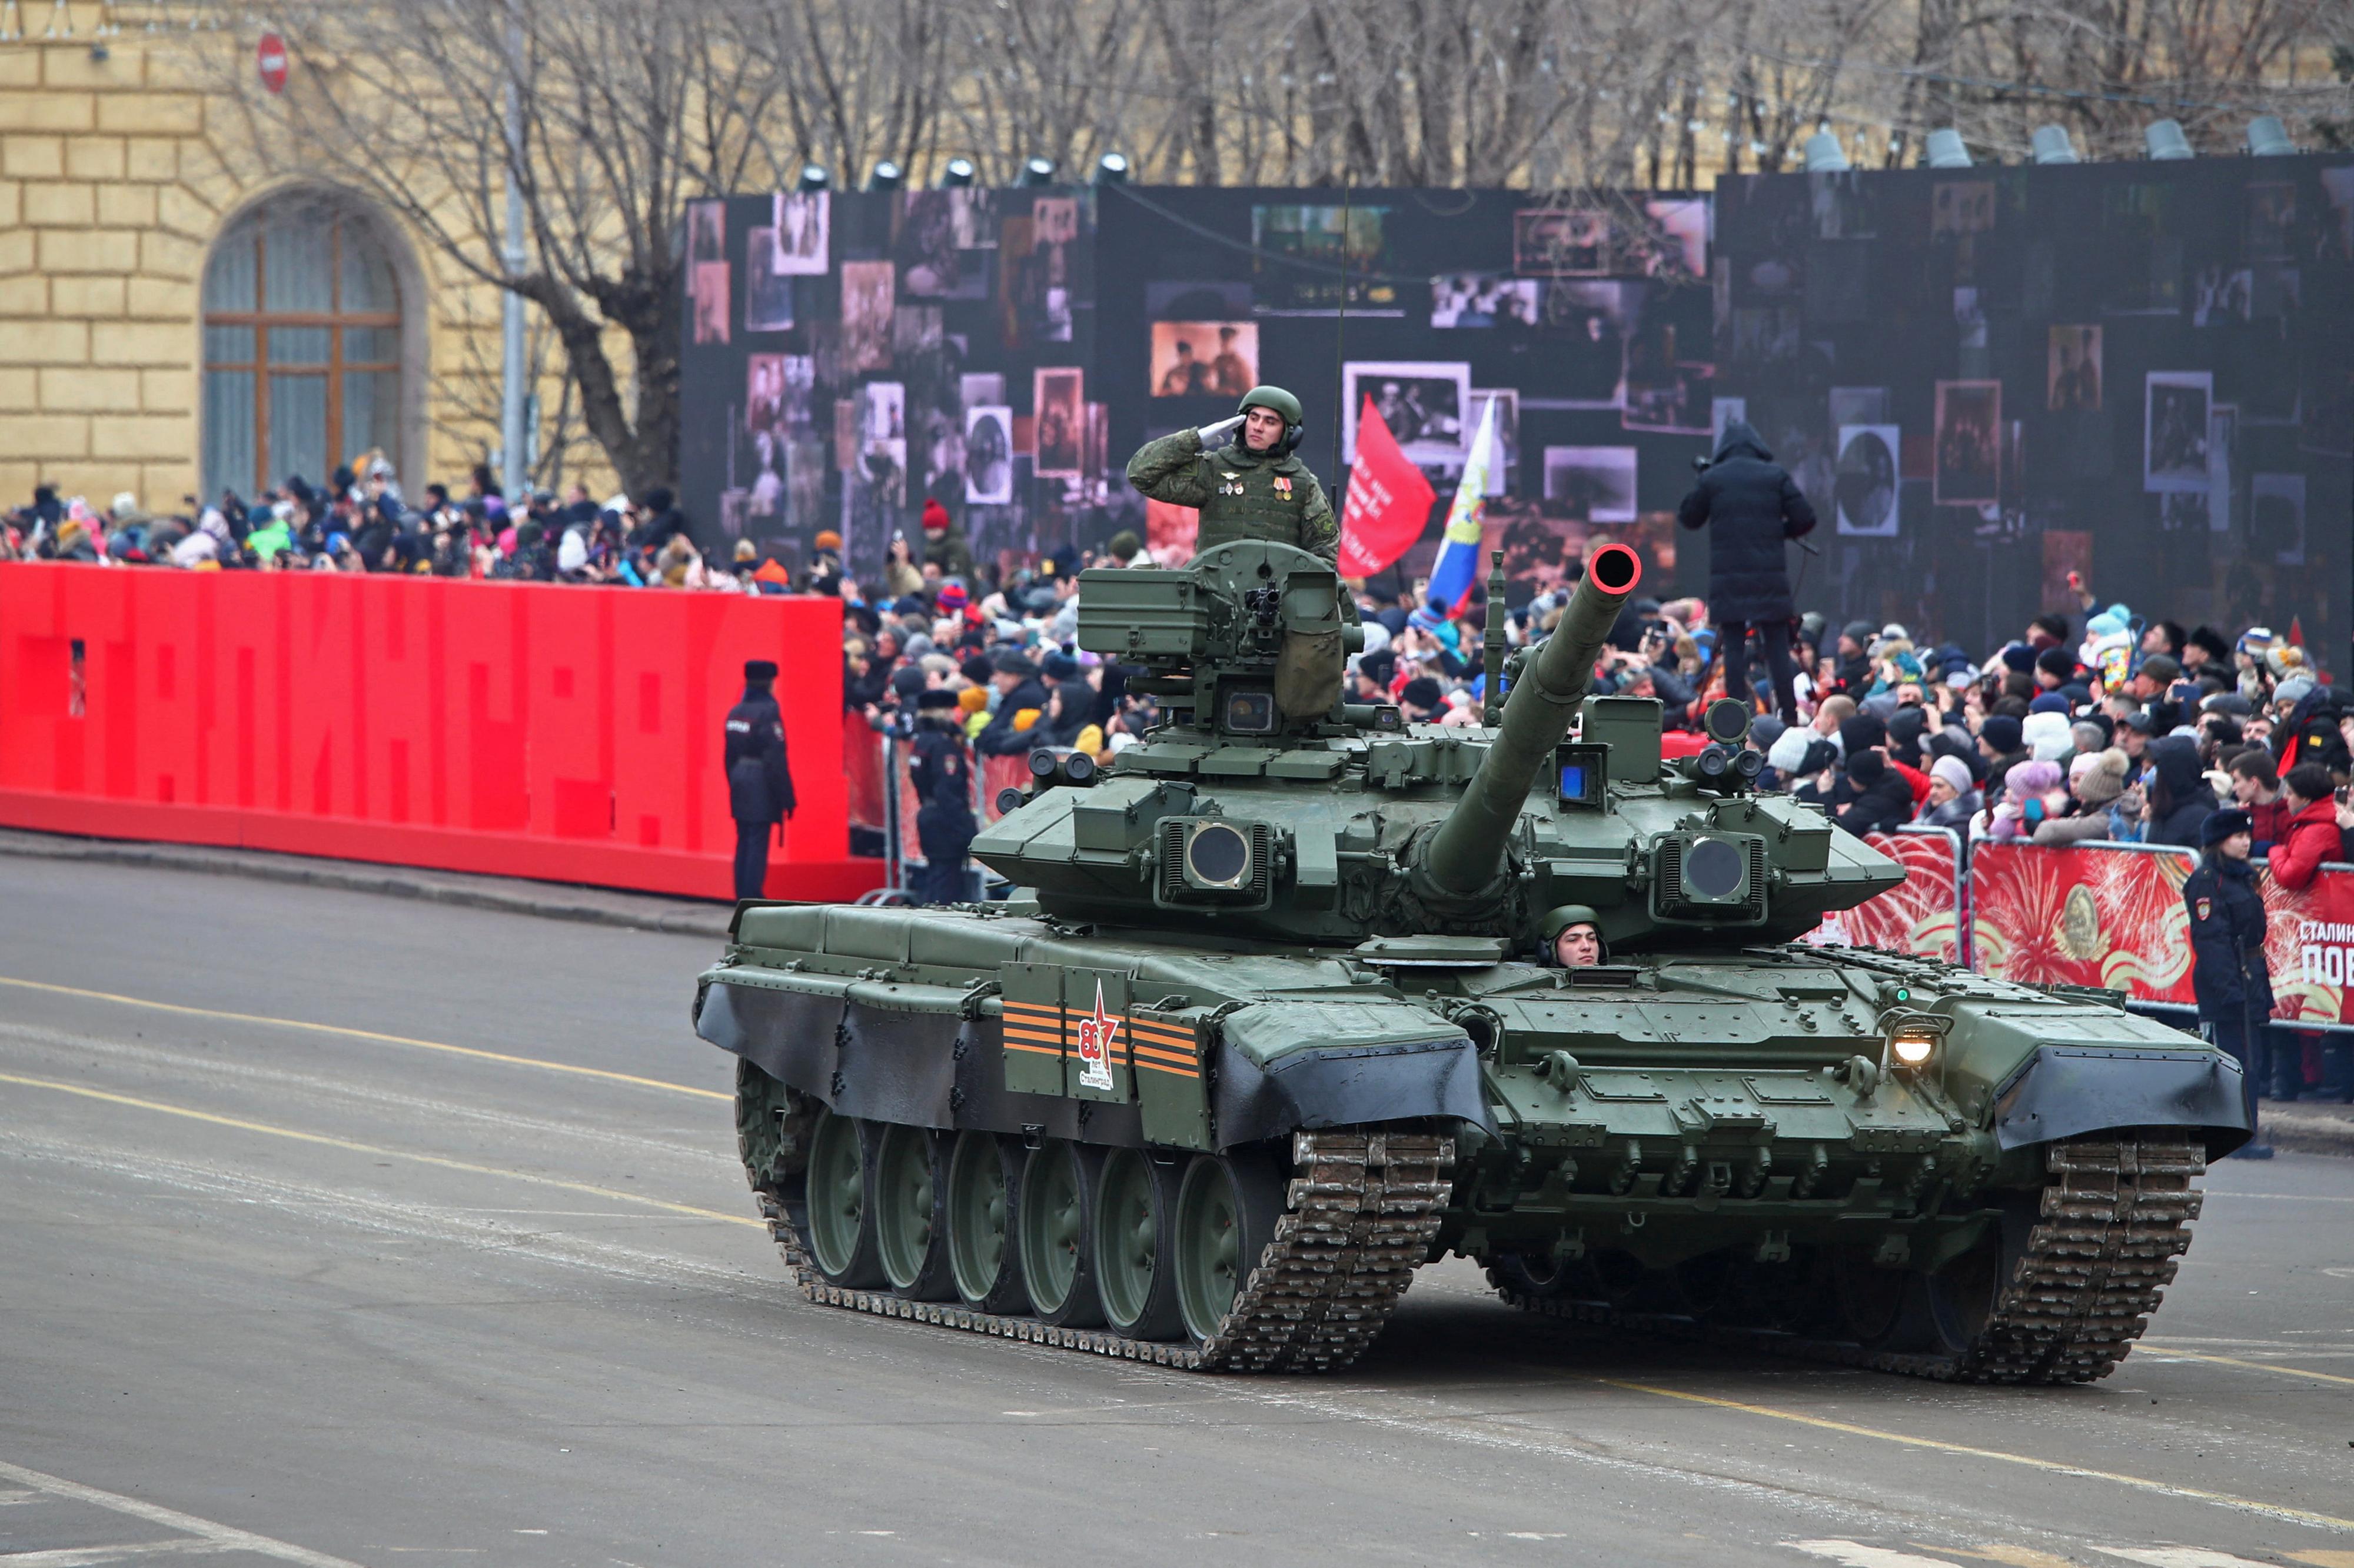 Un tank de l'armée russe participe à un défilé à Volgograd à l'occasion de la commémoration des 80 ans de la victoire soviétique sur l'Allemagne nazie à Stalingrad. [REUTERS - Kirill Braga]